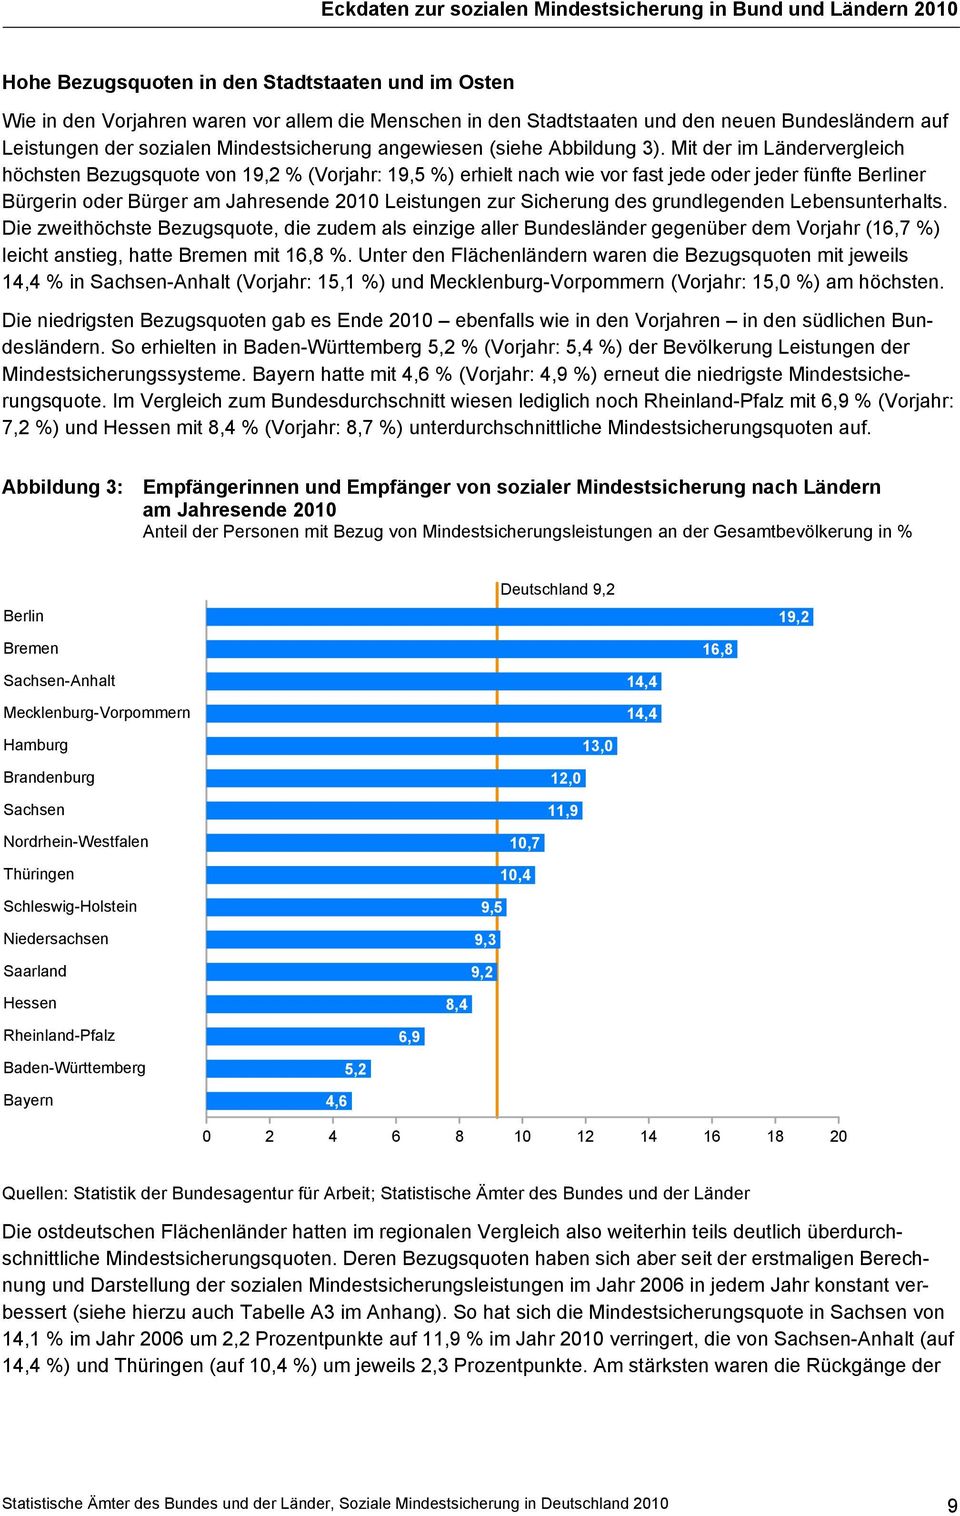 Mit der im Ländervergleich höchsten Bezugsquote von 19,2 % (Vorjahr: 19,5 %) erhielt nach wie vor fast jede oder jeder fünfte Berliner Bürgerin oder Bürger am Jahresende 2010 Leistungen zur Sicherung